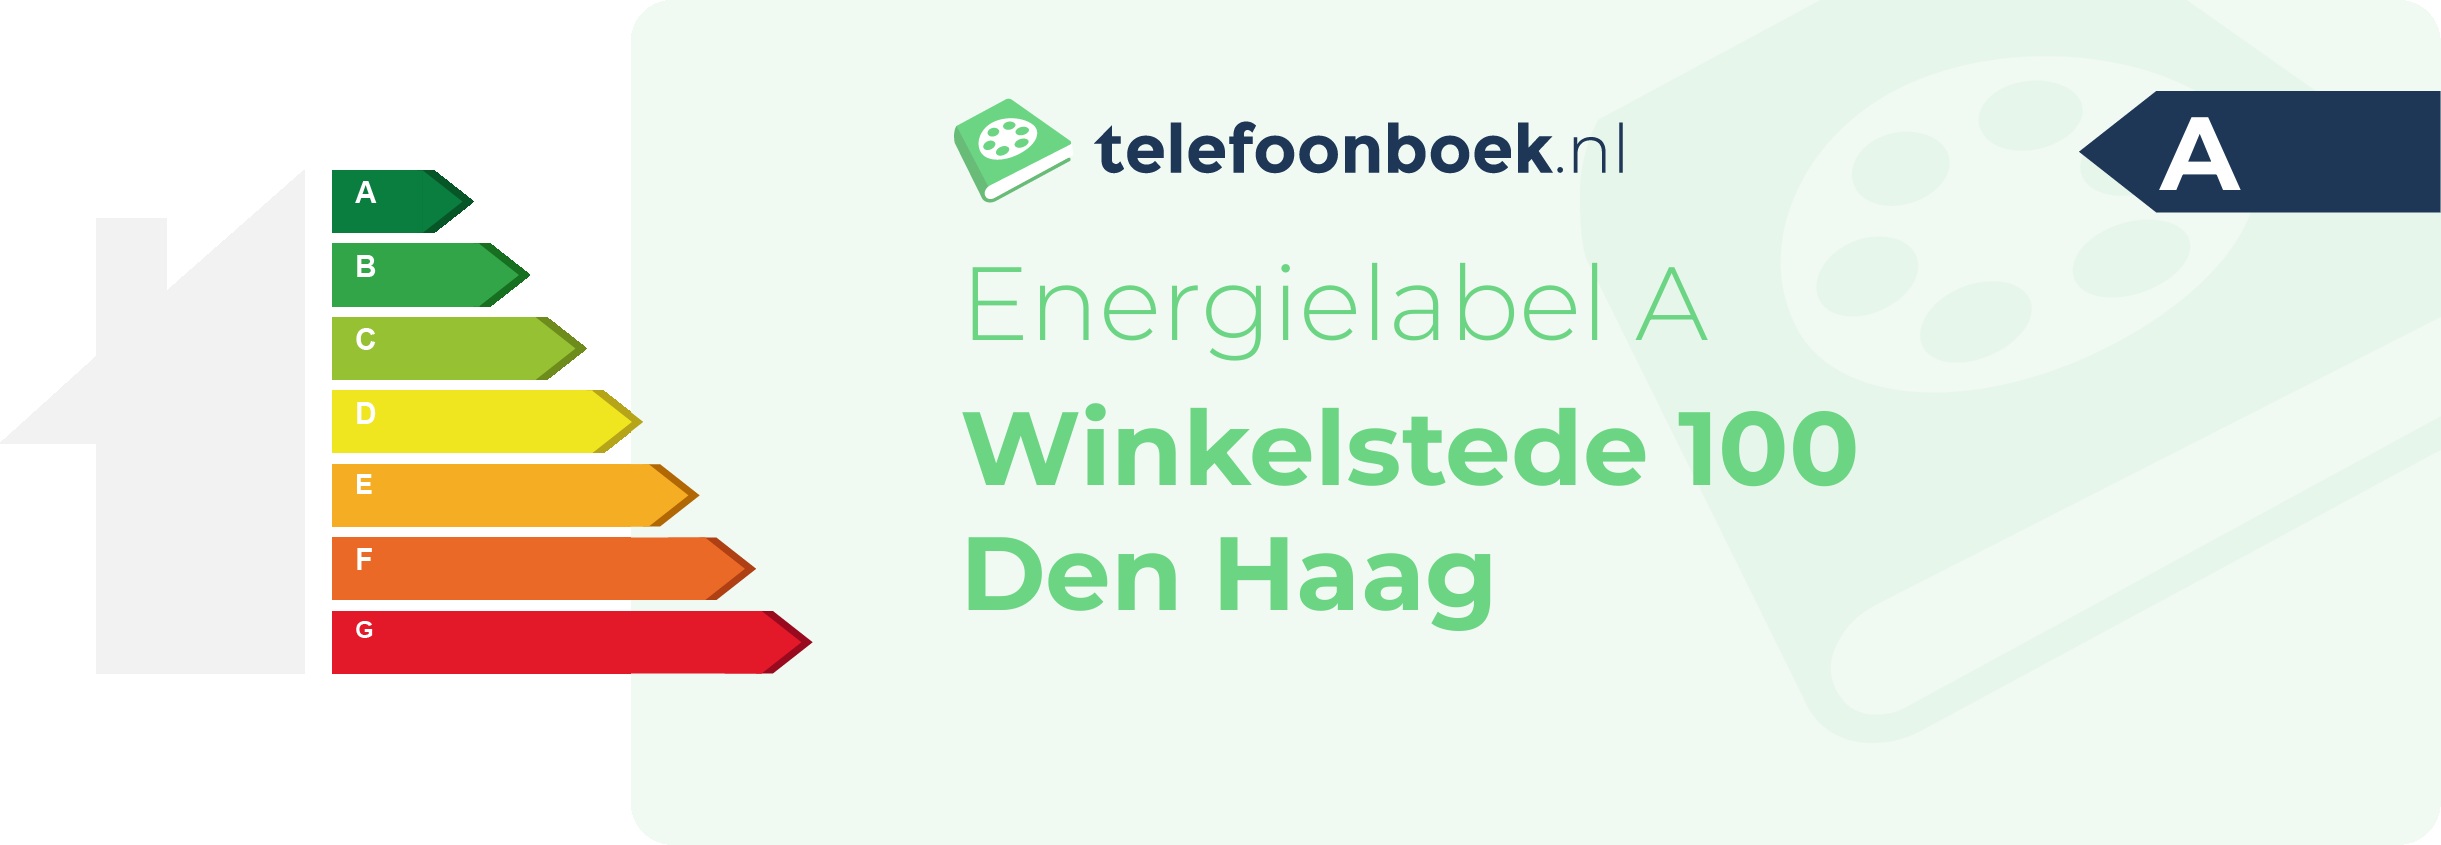 Energielabel Winkelstede 100 Den Haag